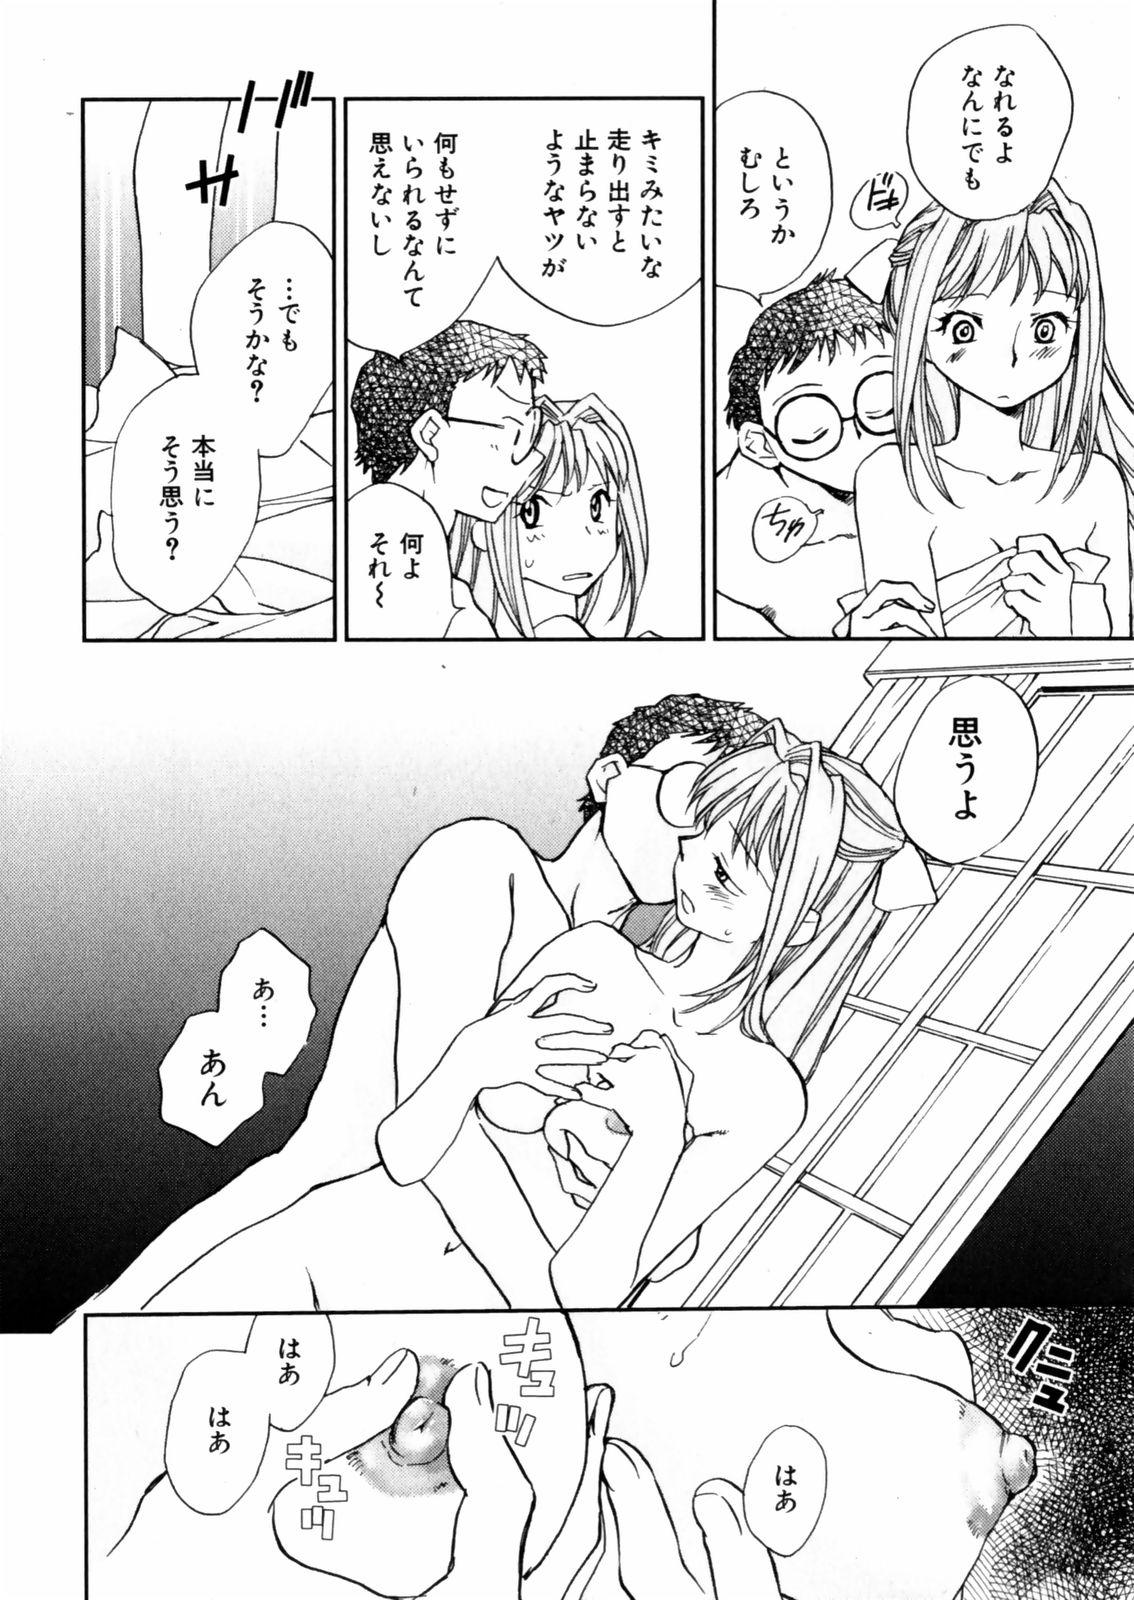 [Okano Ahiru] Hanasake ! Otome Juku (Otome Private Tutoring School) Vol.2 115